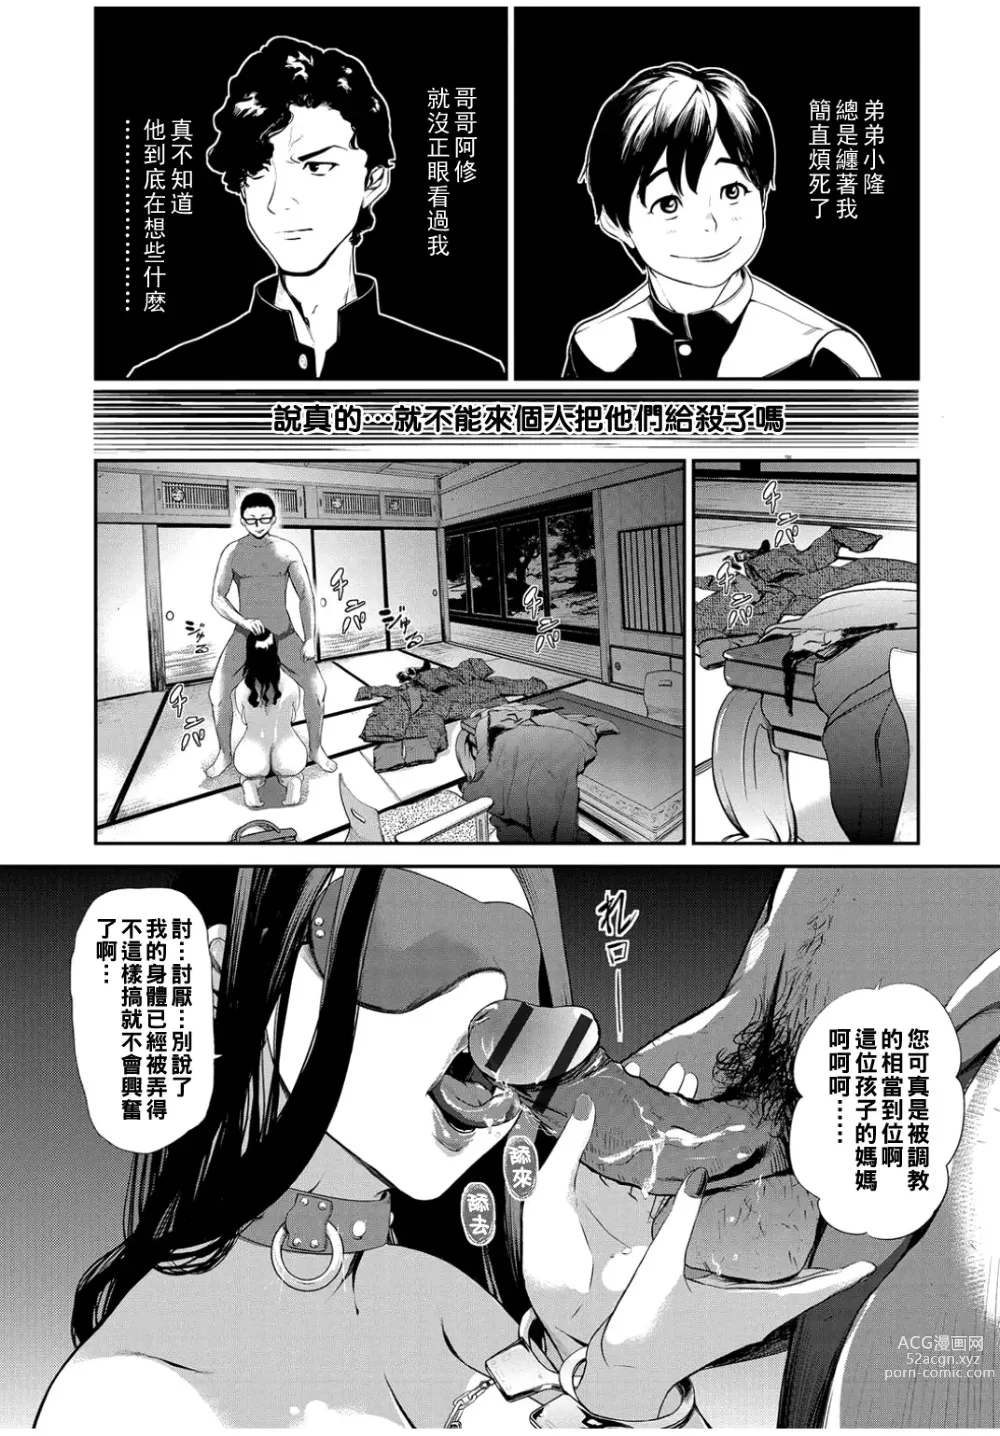 Page 4 of manga Gibo Change